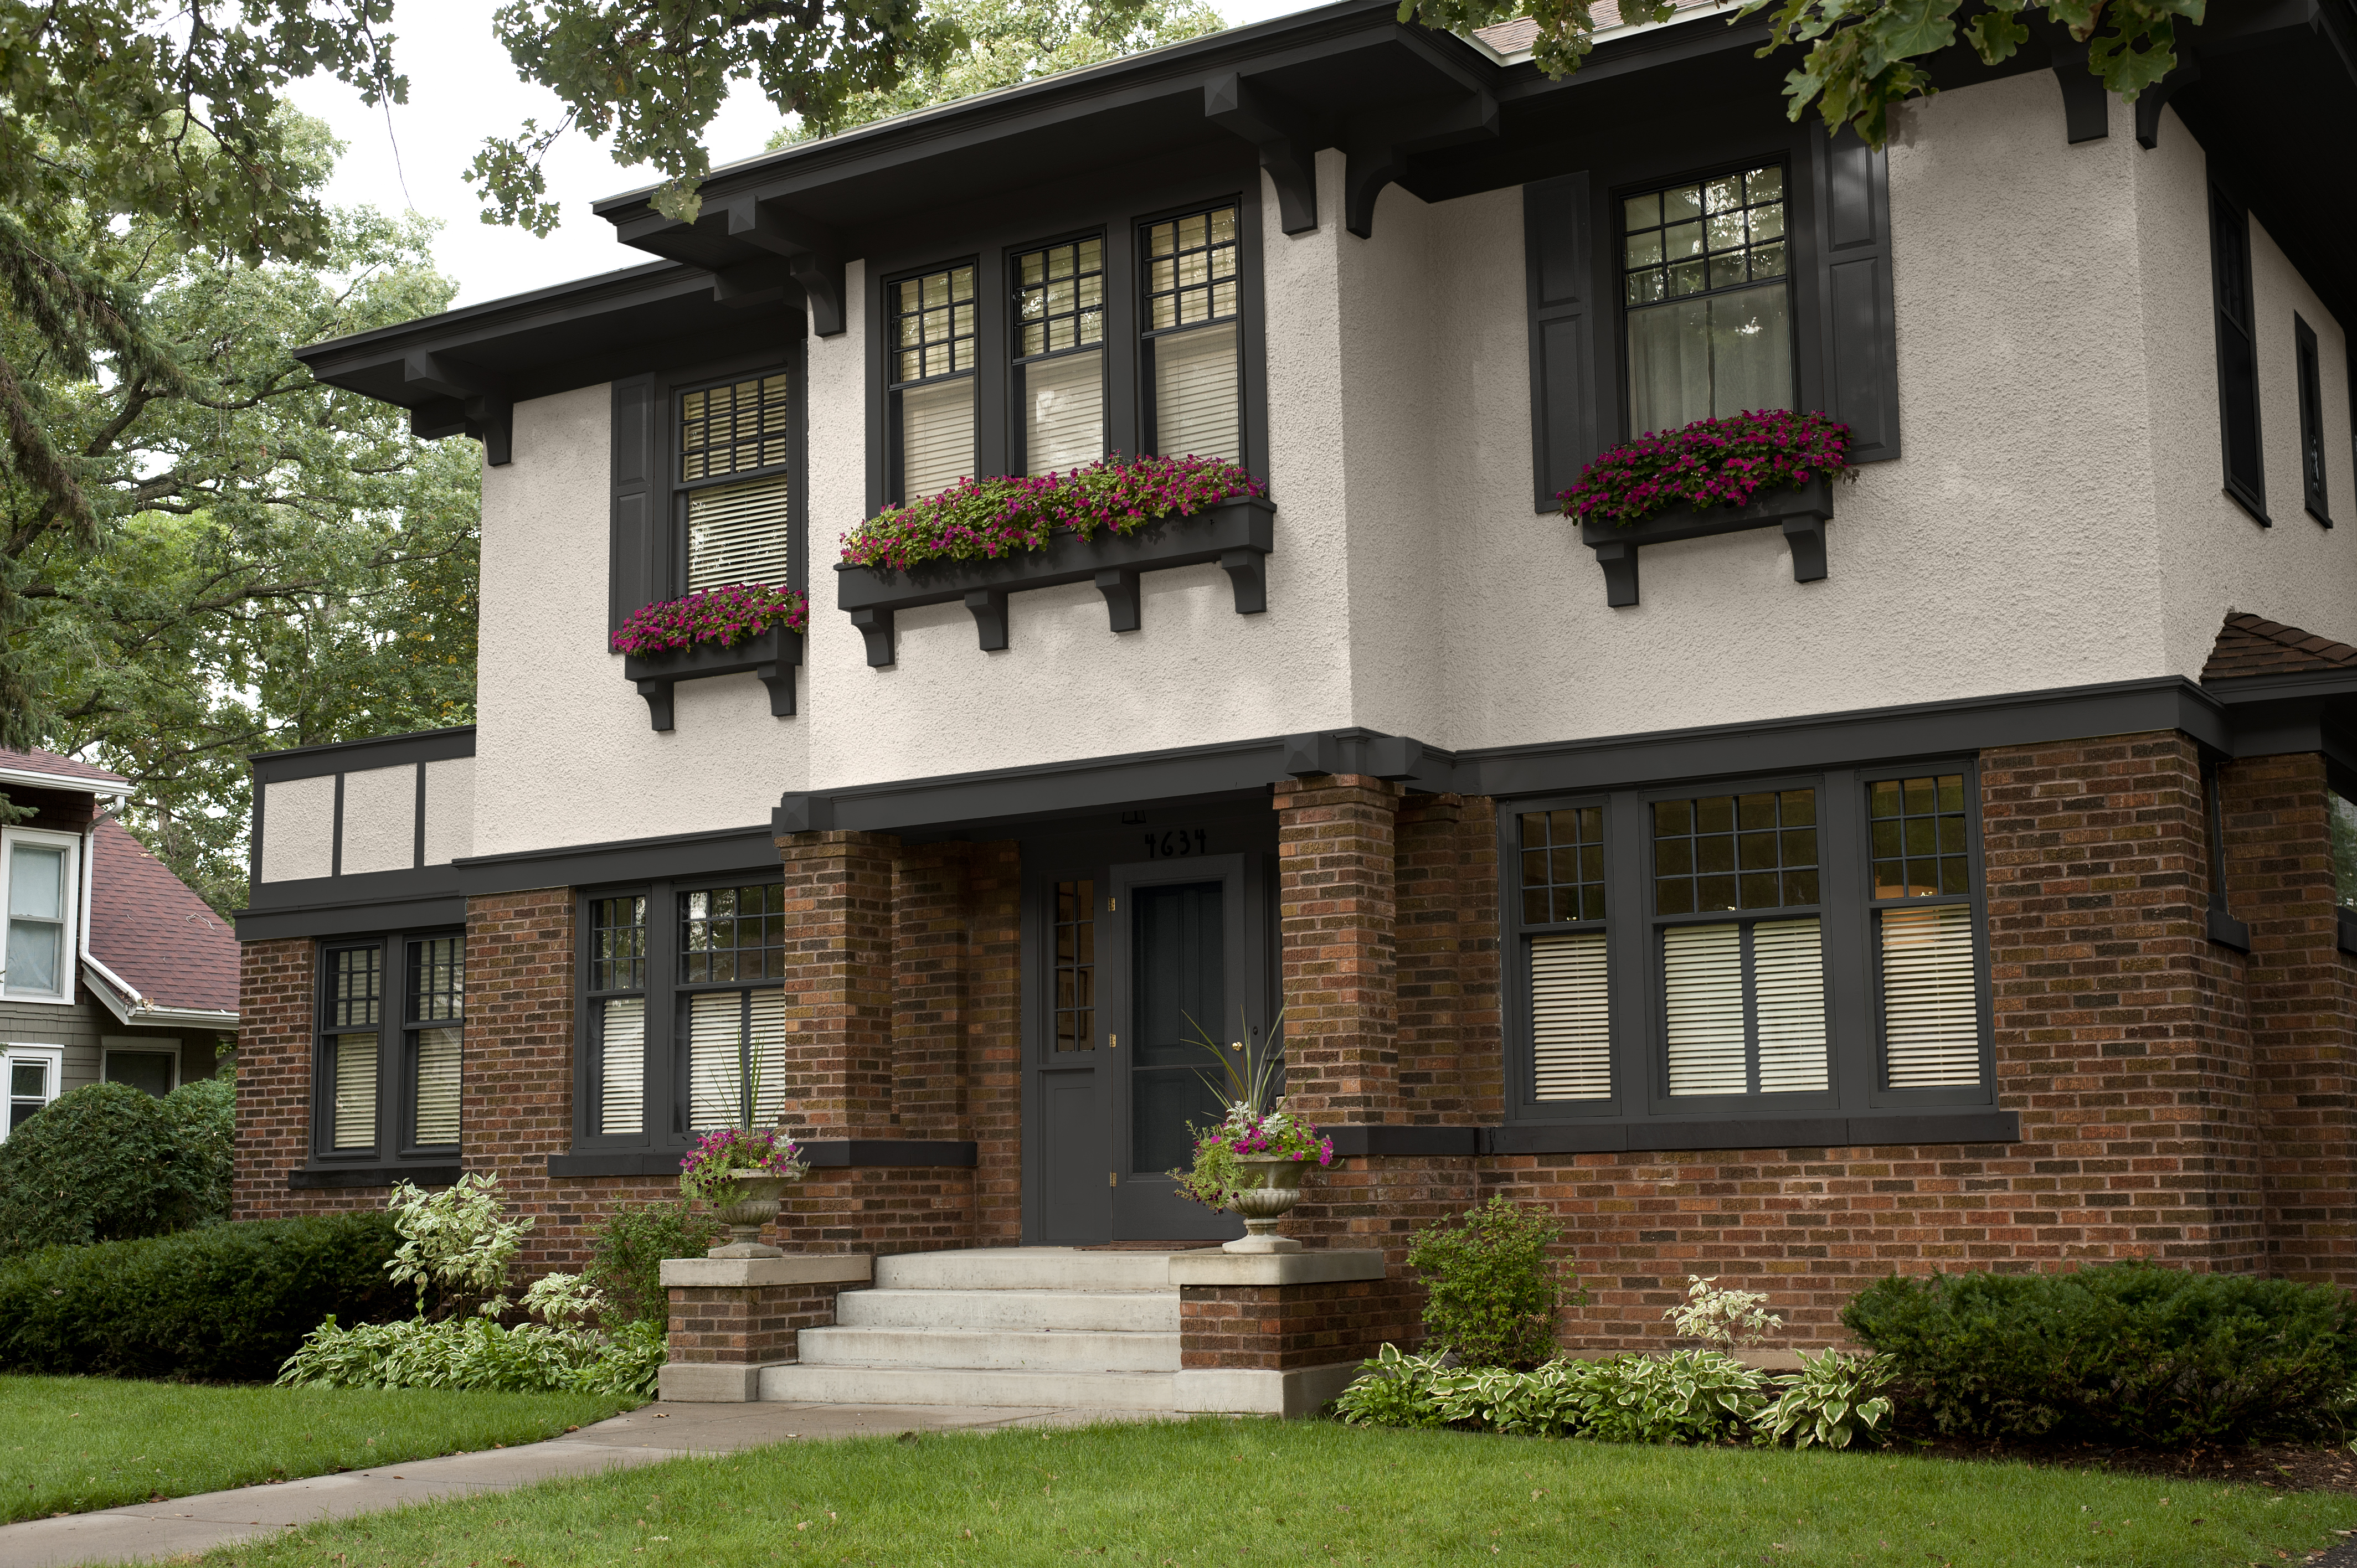 L'extérieur d'une maison à deux étages avec du stuc beige, des briques rouges et brunes et des garnitures et accents noirs